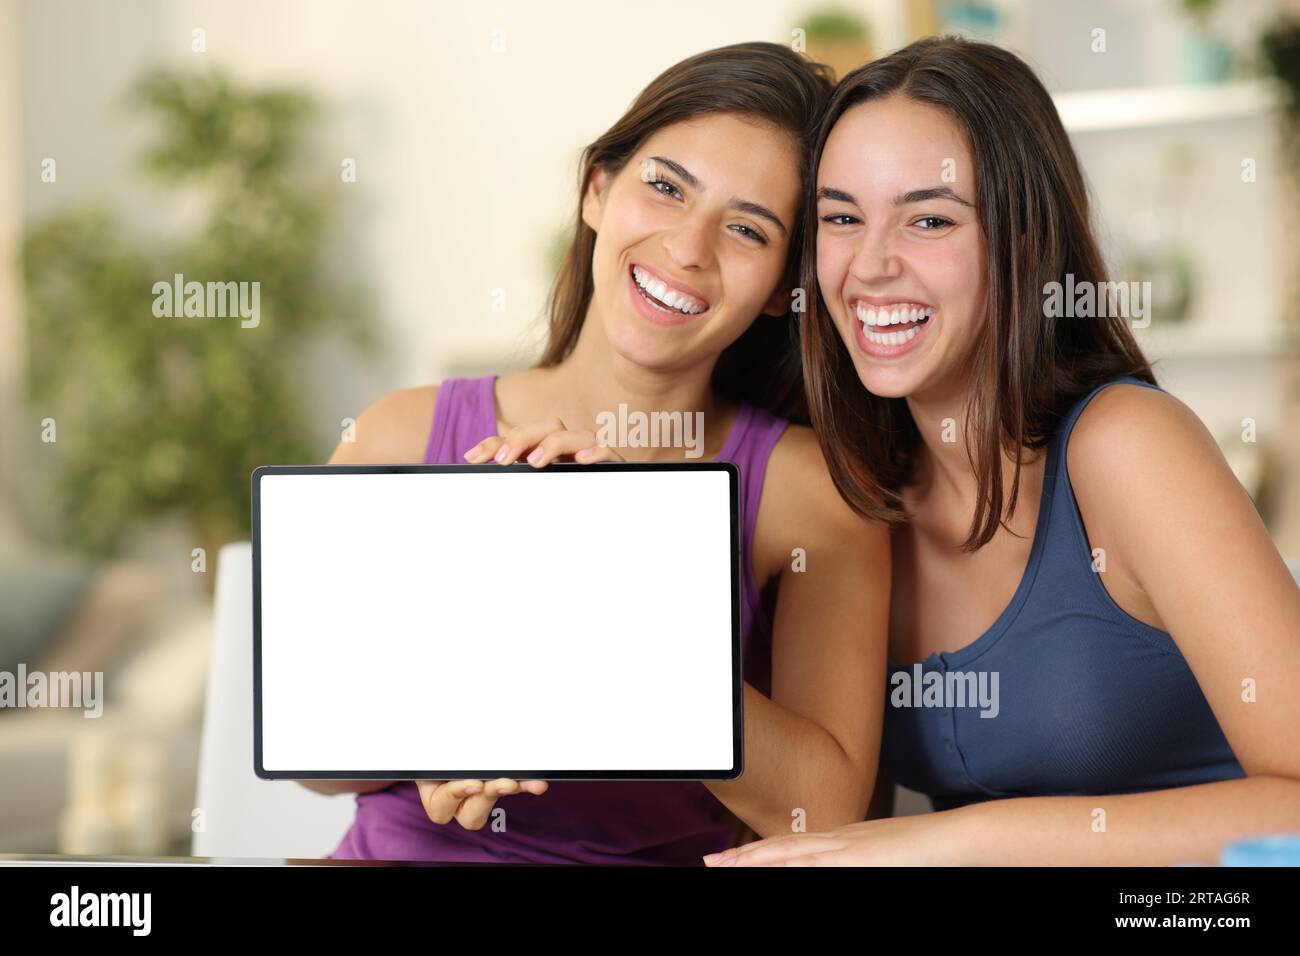 Zwei lustige Frauen, die zu Hause auf dem leeren Tablet-Bildschirm der Kamera zu sehen sind Stockfoto